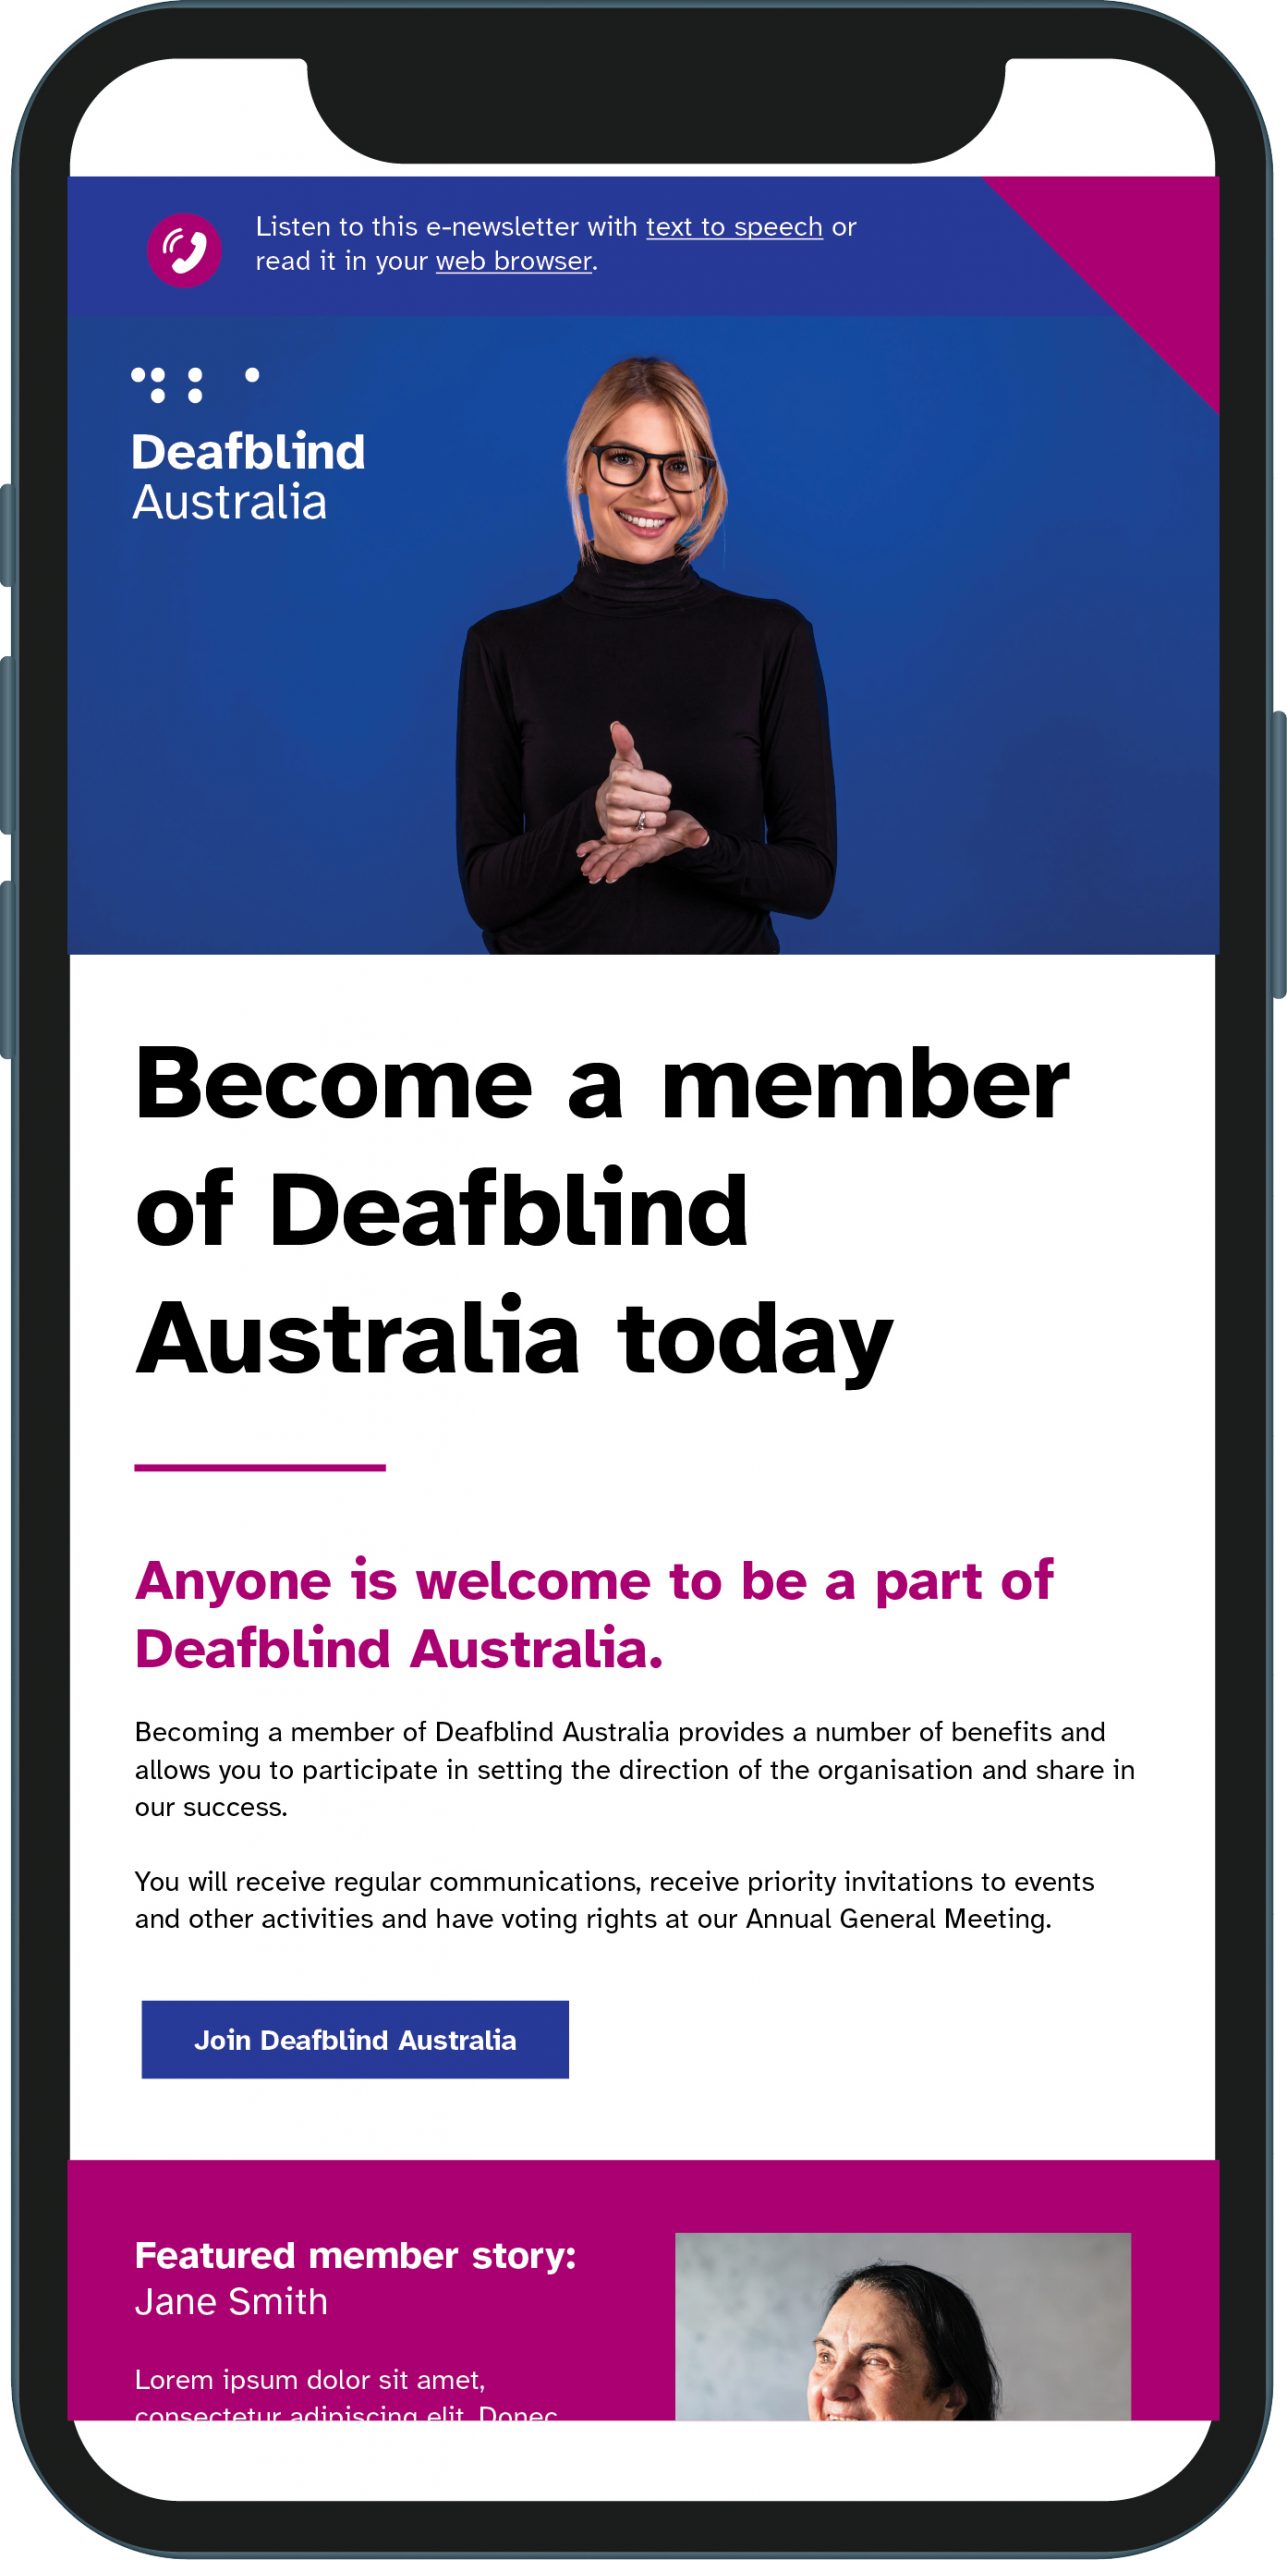 Deafblind Australia e-newsletter design